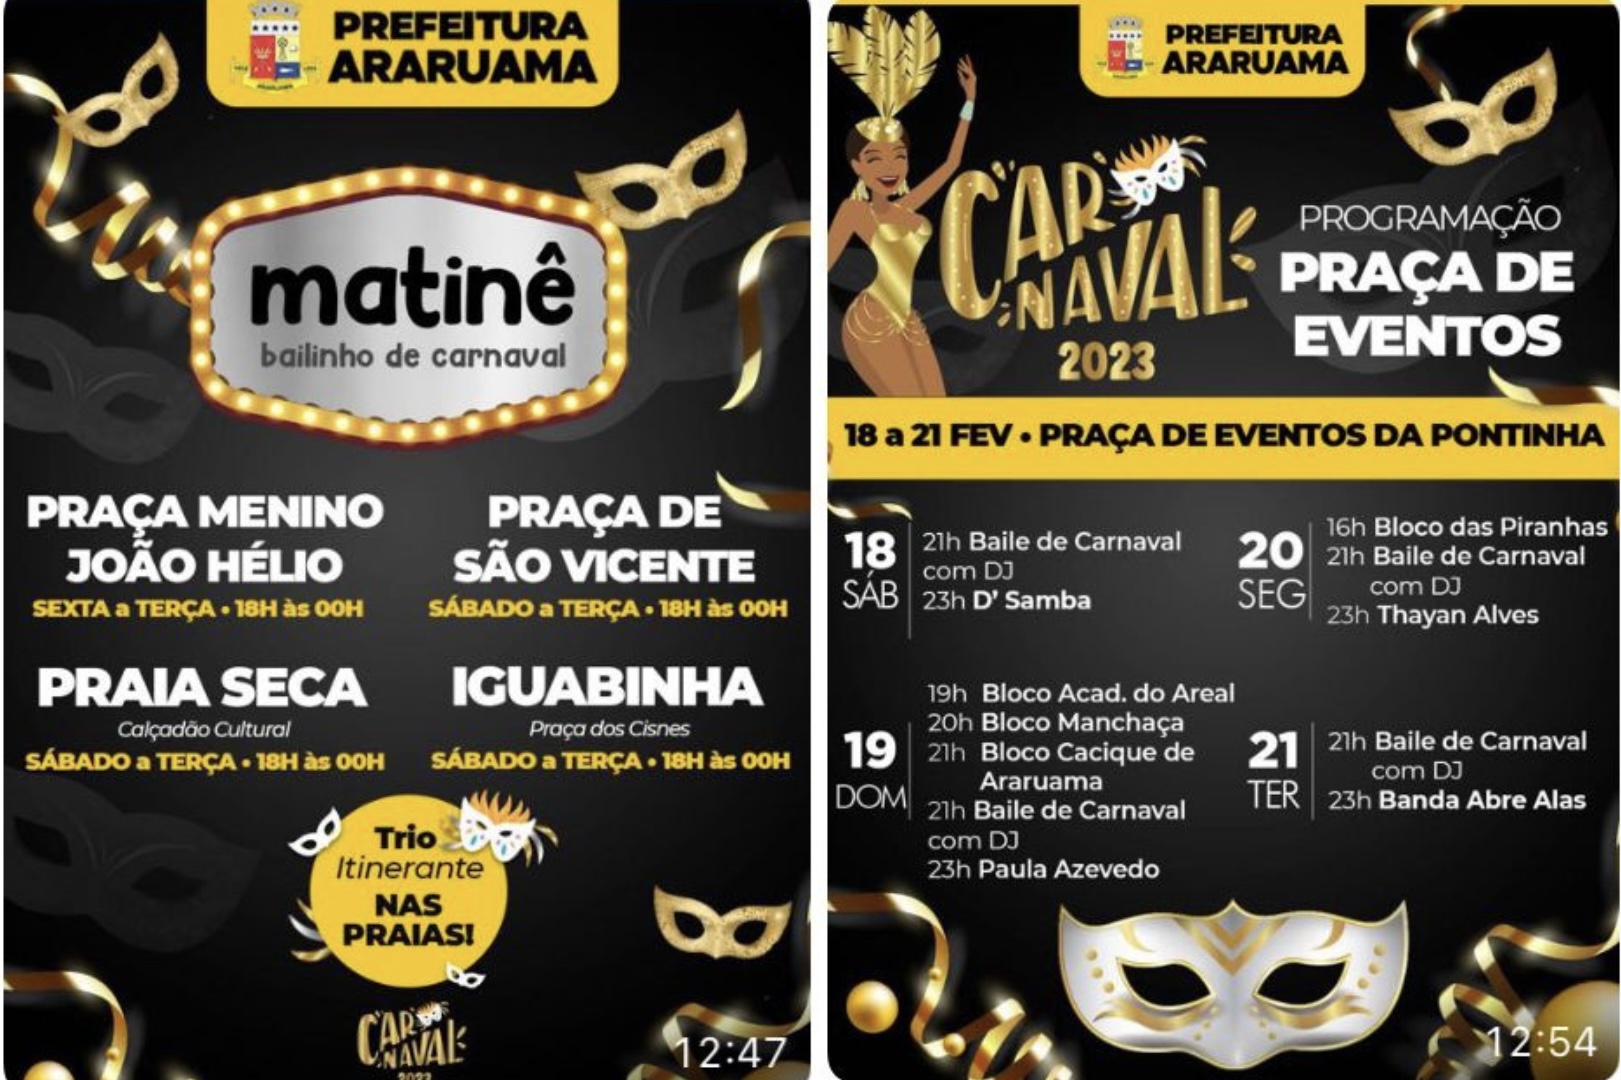 Prefeitura de Araruama divulga a programação do Carnaval 2023